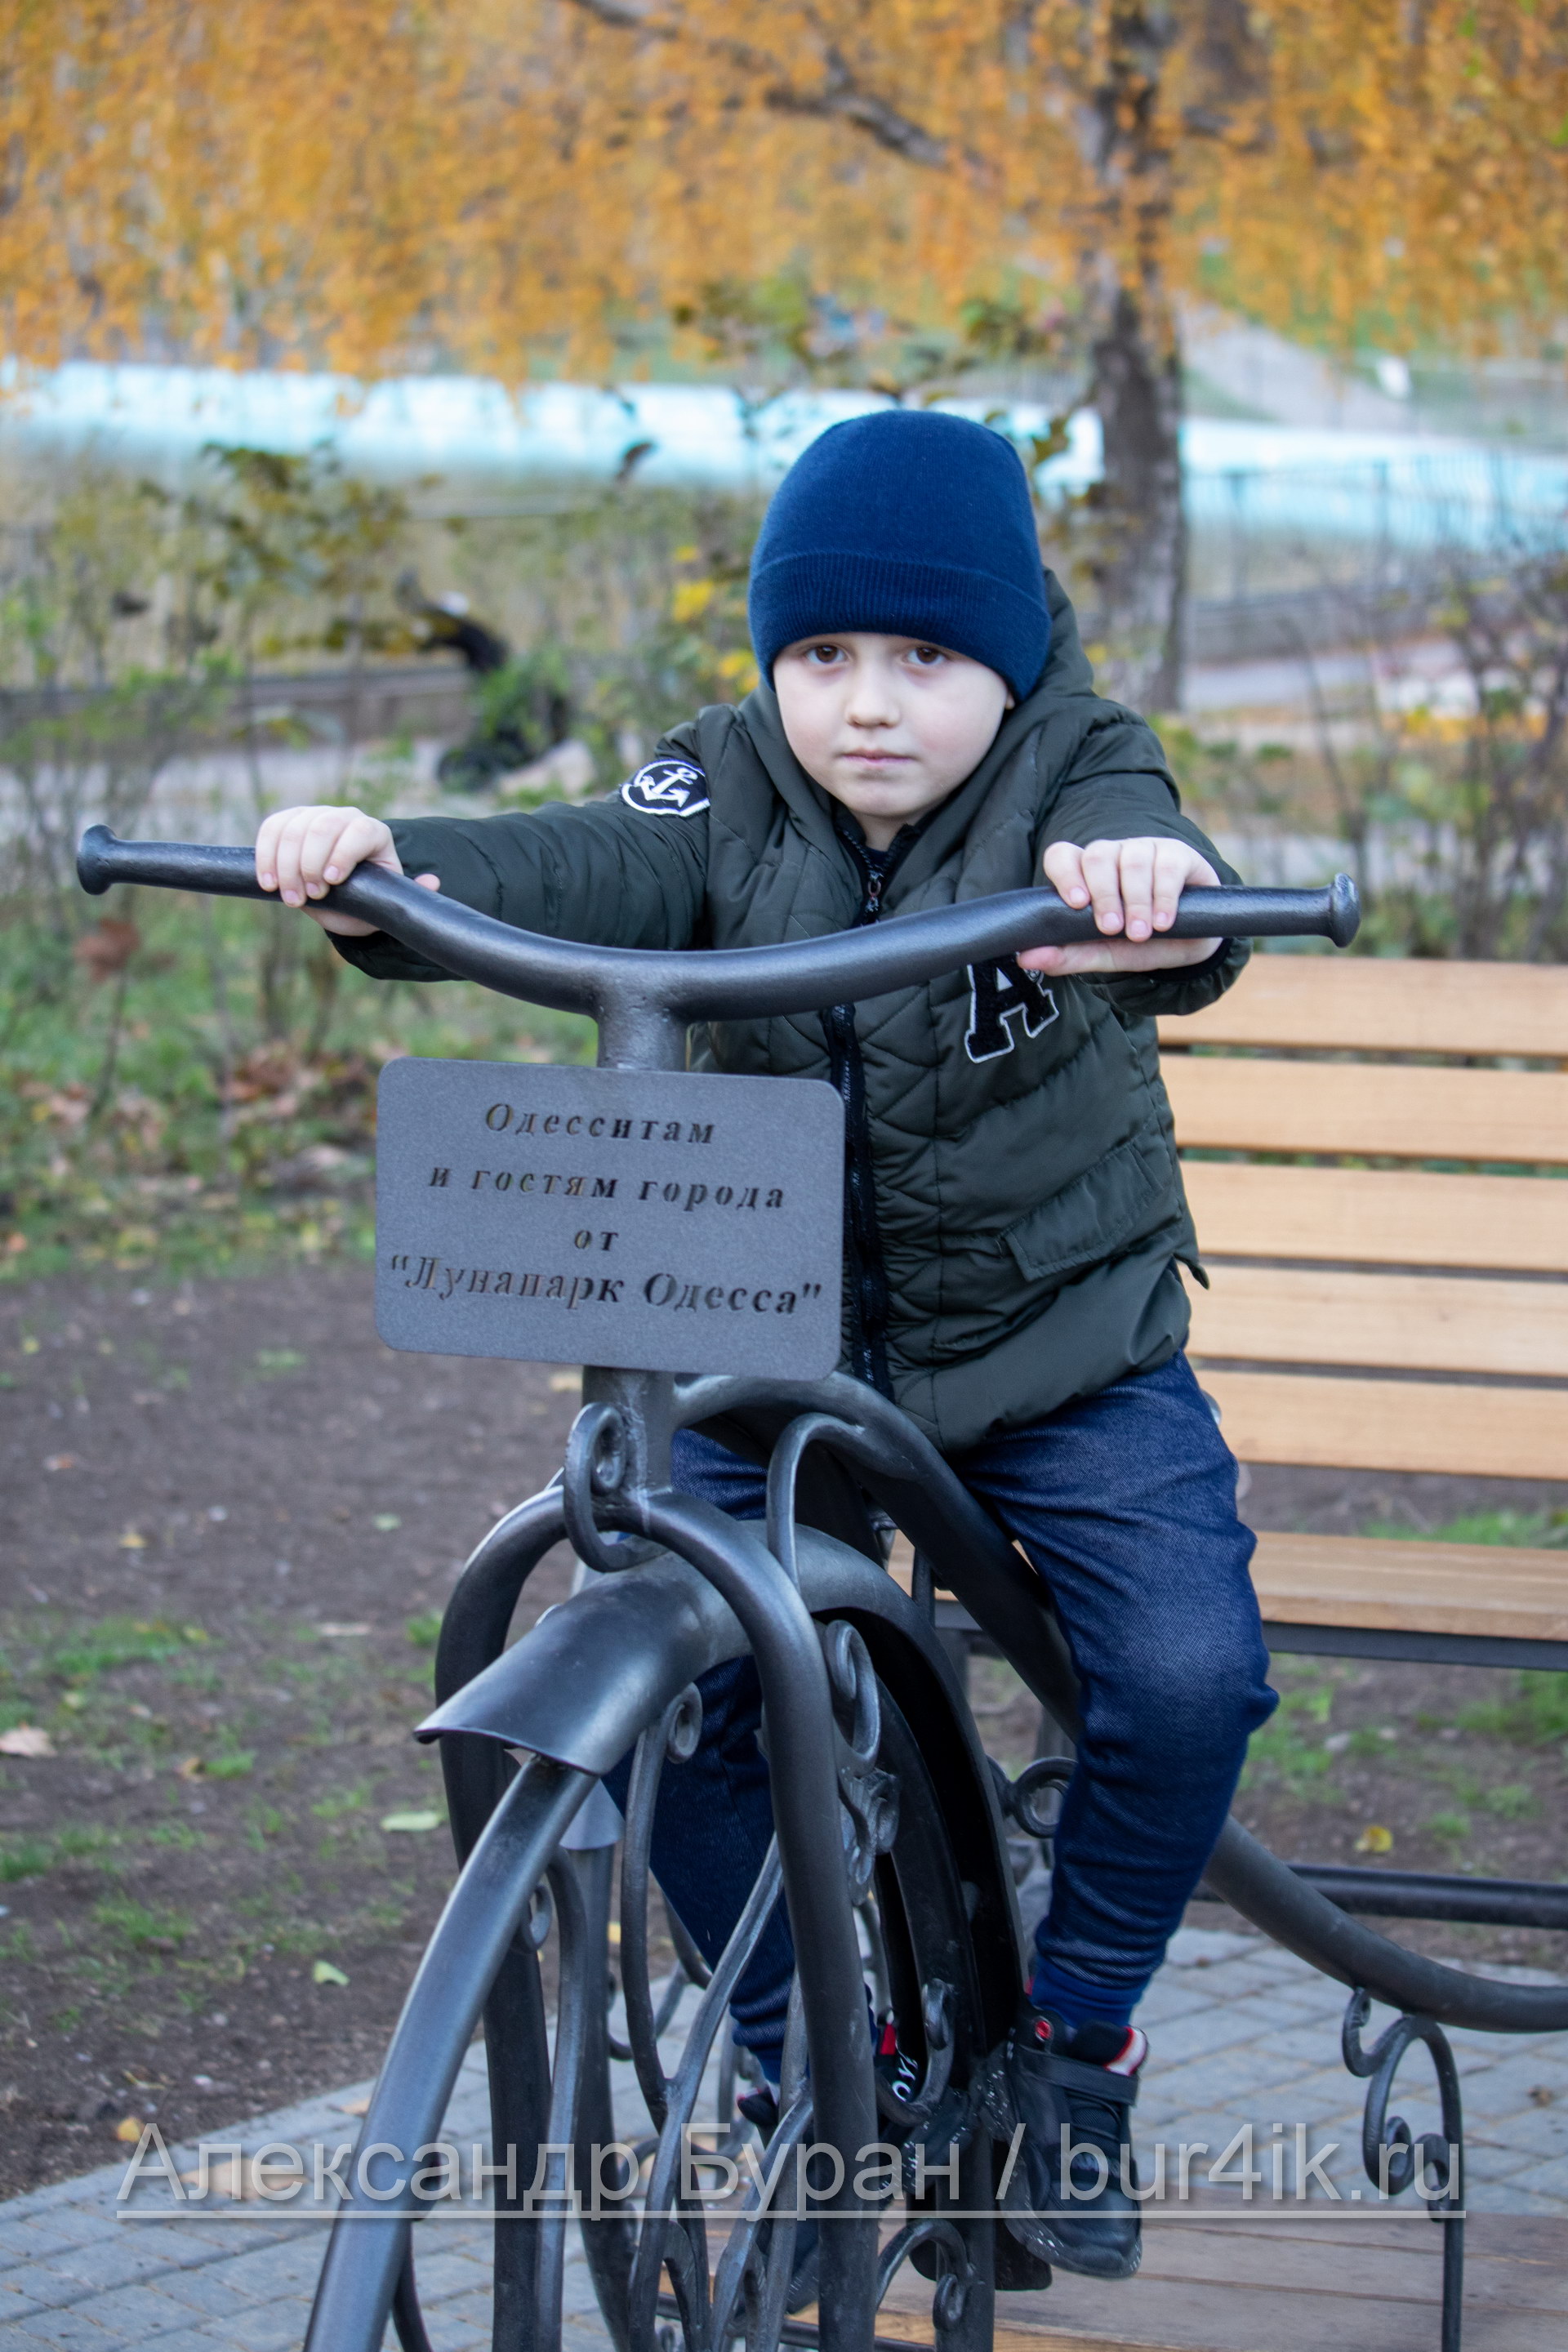 Мальчик на металлических велосипедов - скульптура у входа в парк - Украина, Одесса, 17,10,2019